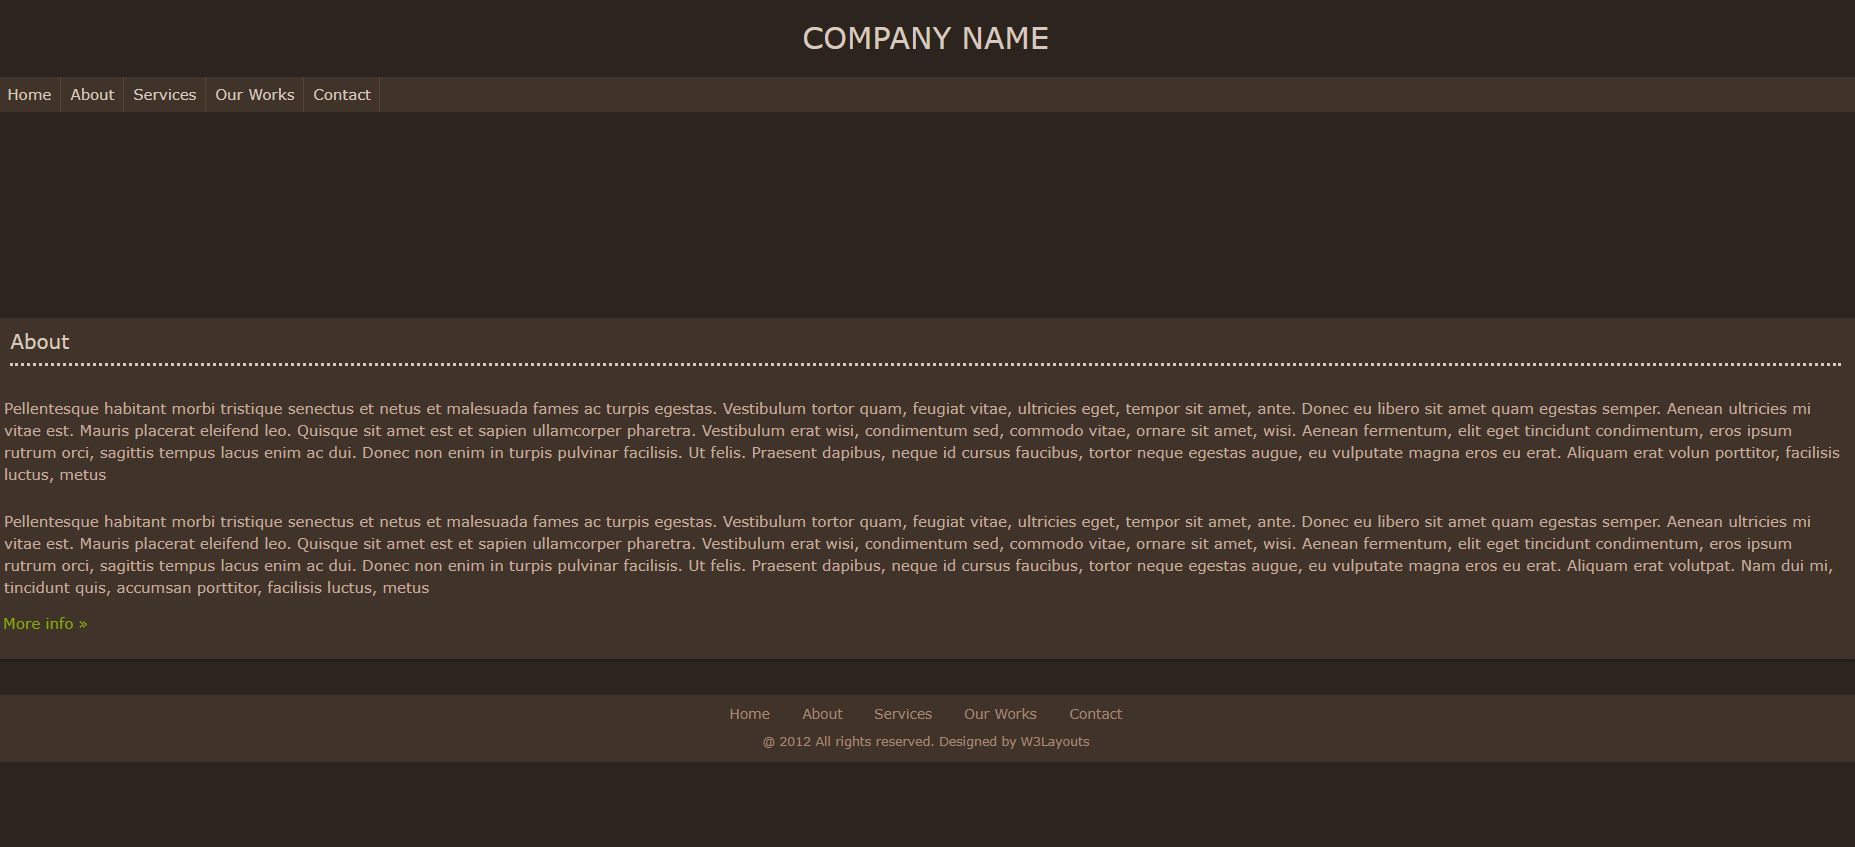 棕色欧美风格响应式企业介绍网页模板